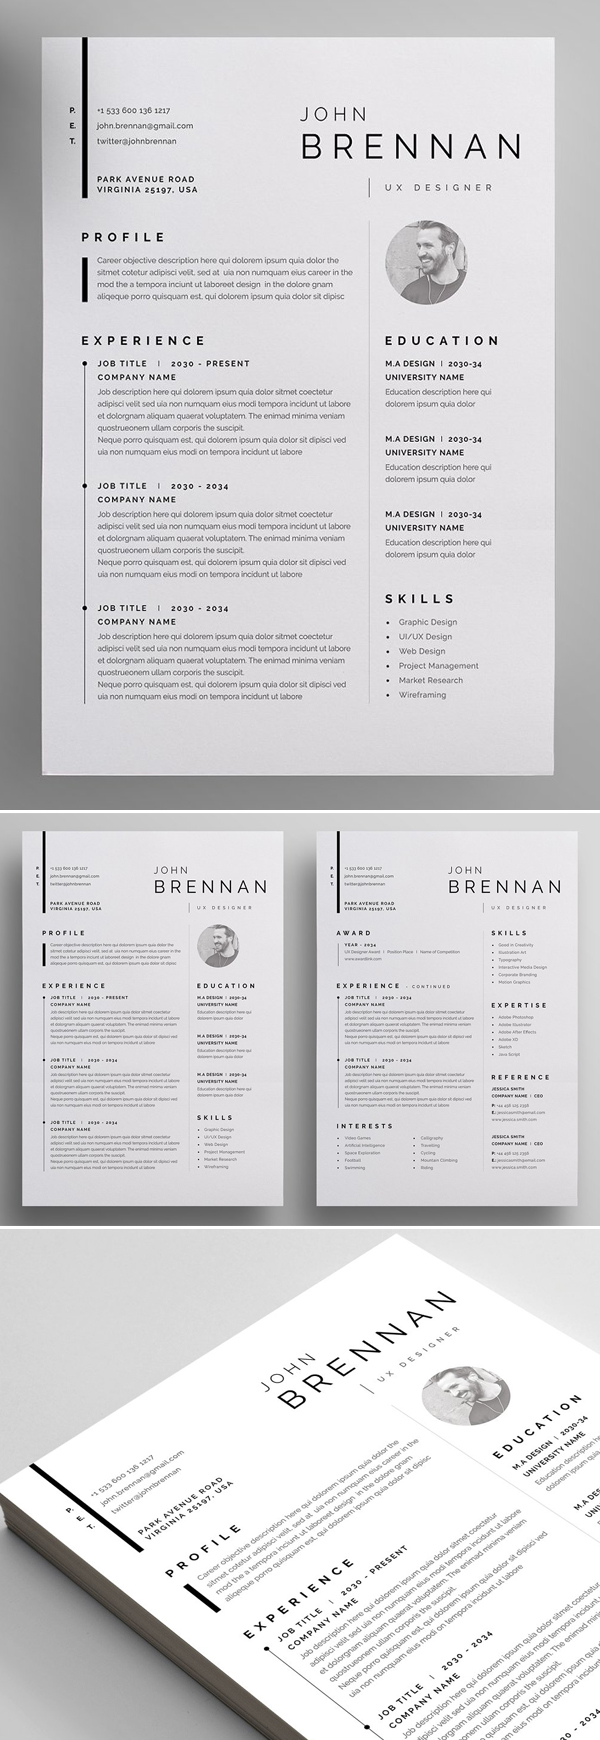 Best Resume / CV